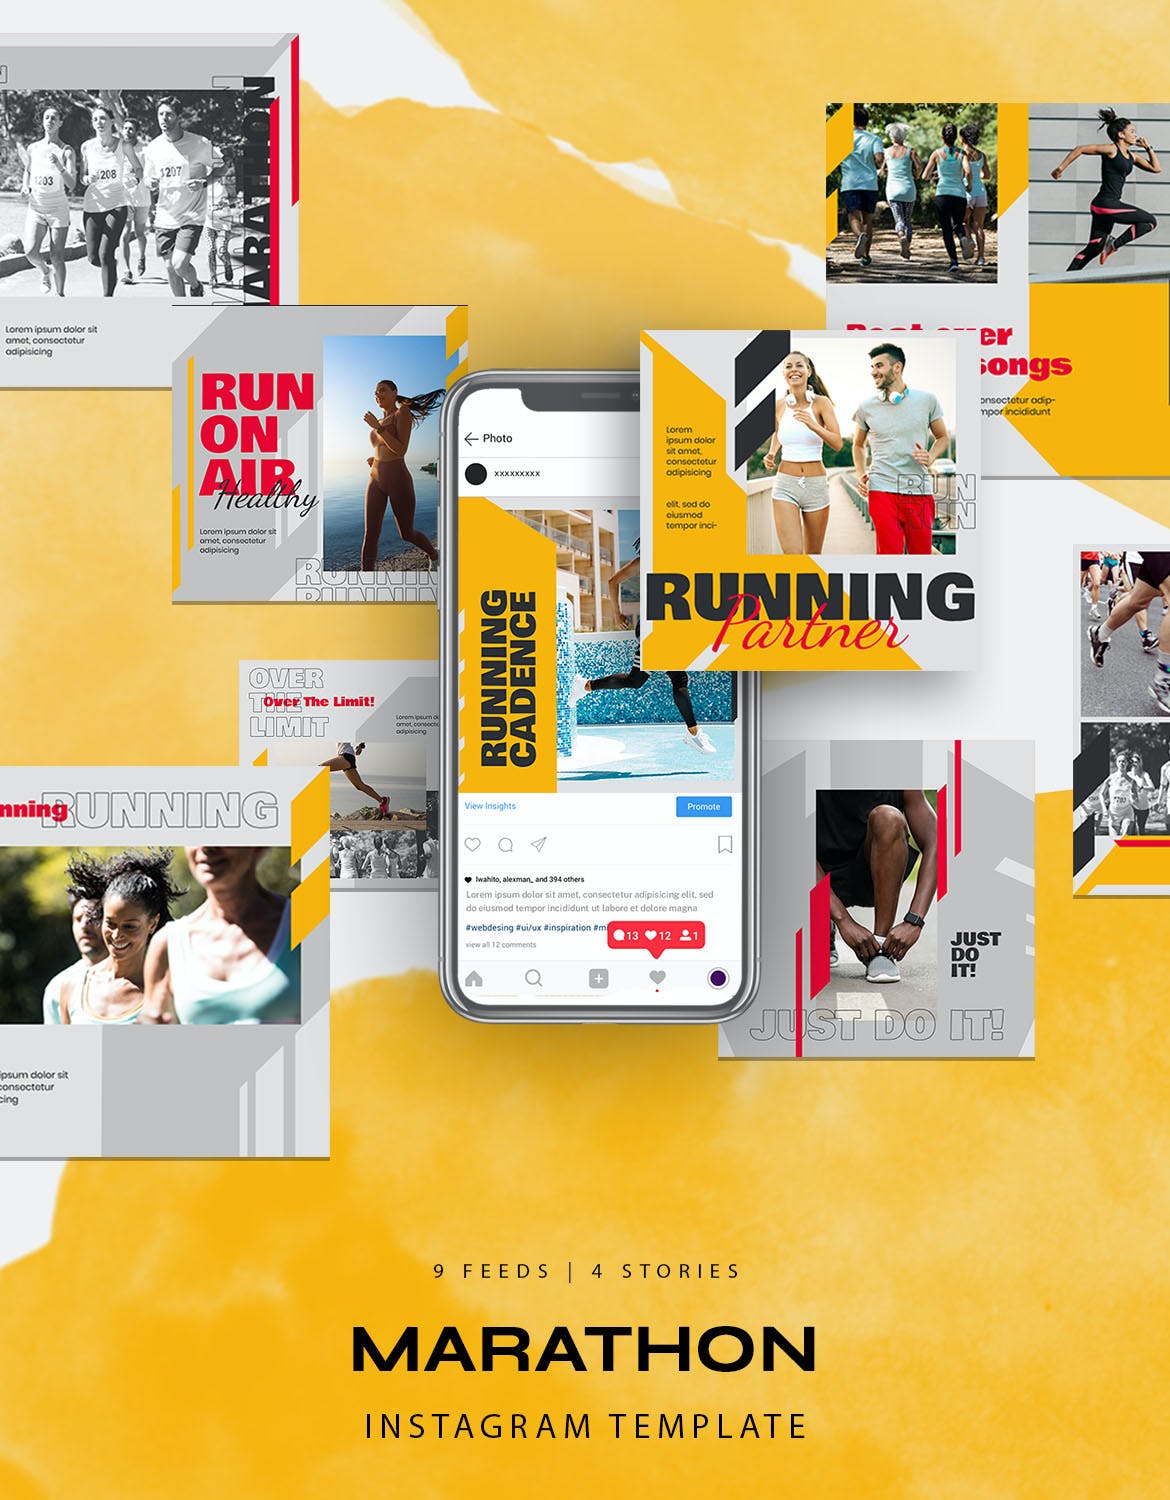 跑步 马拉松 运动Instagram故事社交贴图素材 Sport Instagram Stories for Marathon or Running设计素材模板